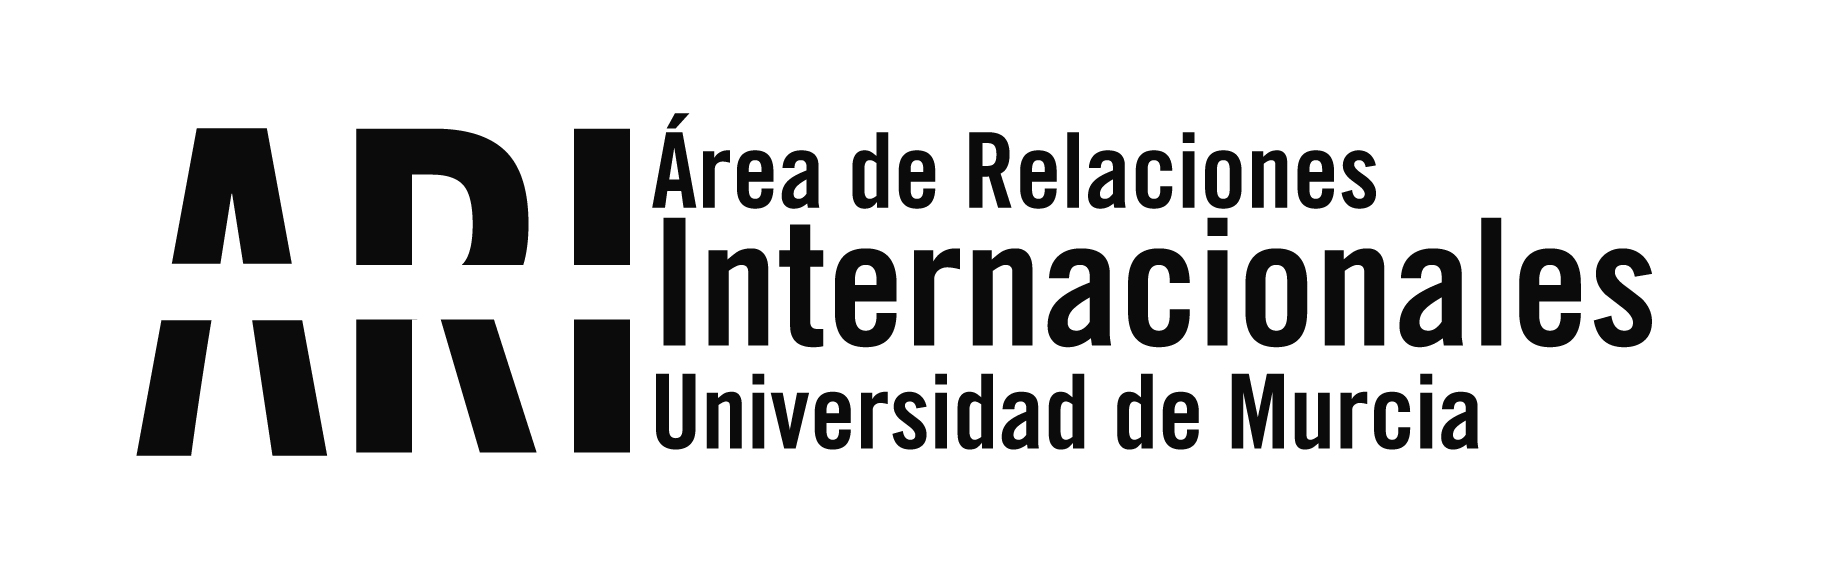 Abierta la Convocatoria de auxiliares de conversación en la UMU para el curso 22-23 - Área de Relaciones Internacionales